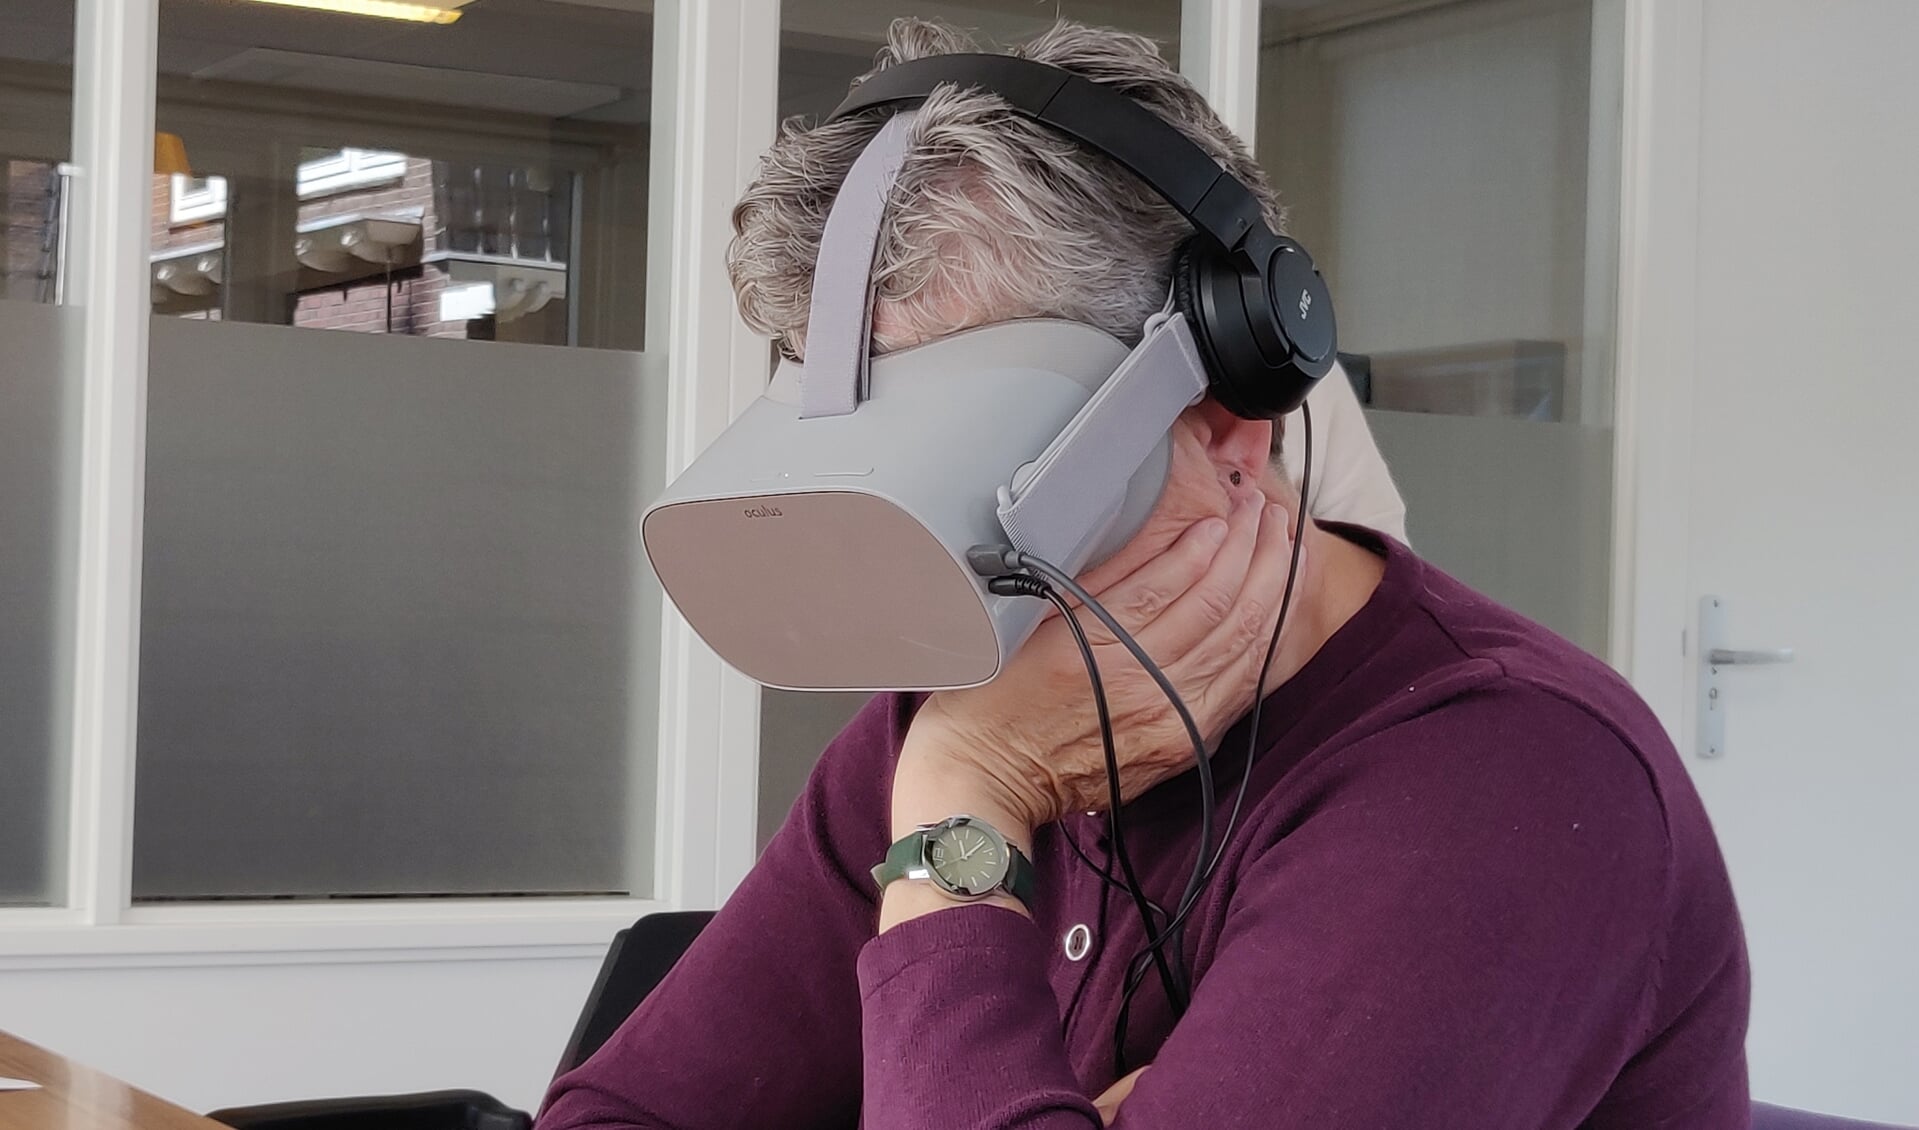 Met een VR-bril (VR is Virtual Reality, virtuele werkelijkheid) als gezond persoon dementie ervaren, blijkt een grote impact te hebben. Foto: Rob Stevens